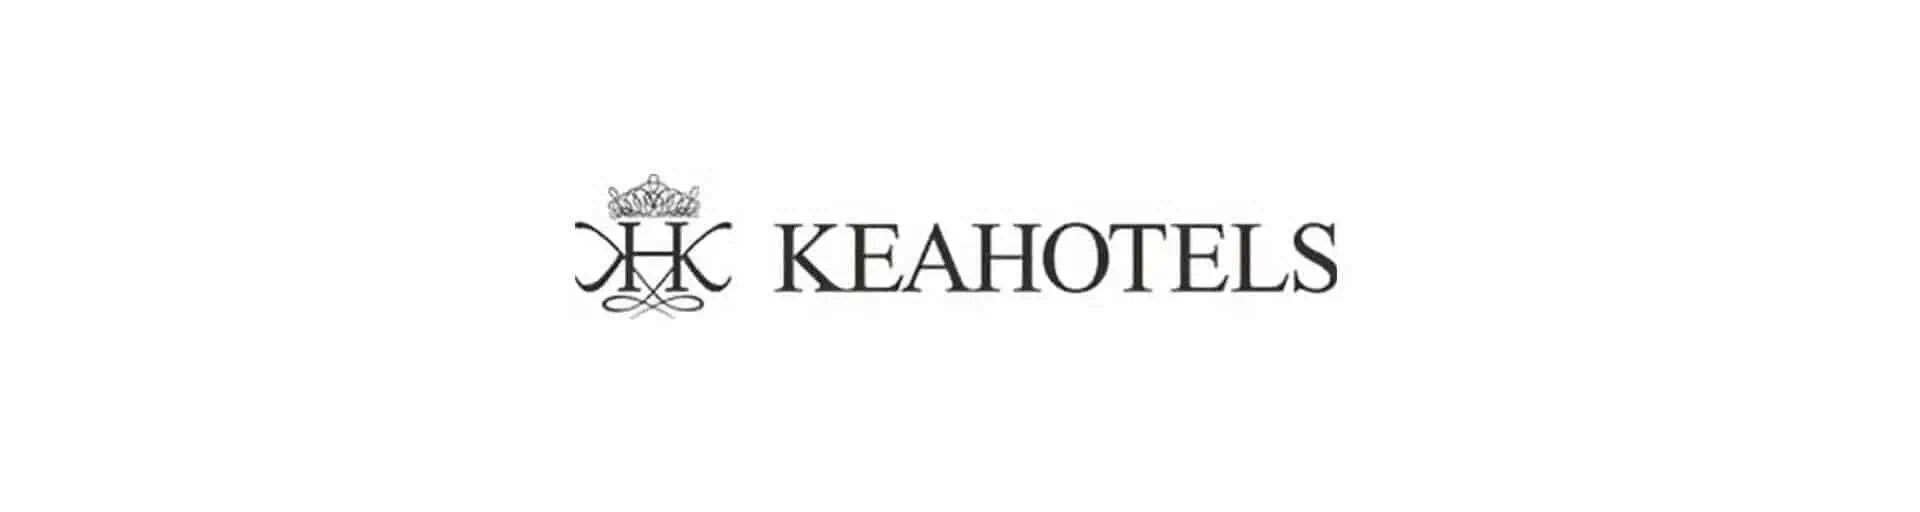 NBH utsedd till partner för varumärkesmarknadsföring för KeaHotels